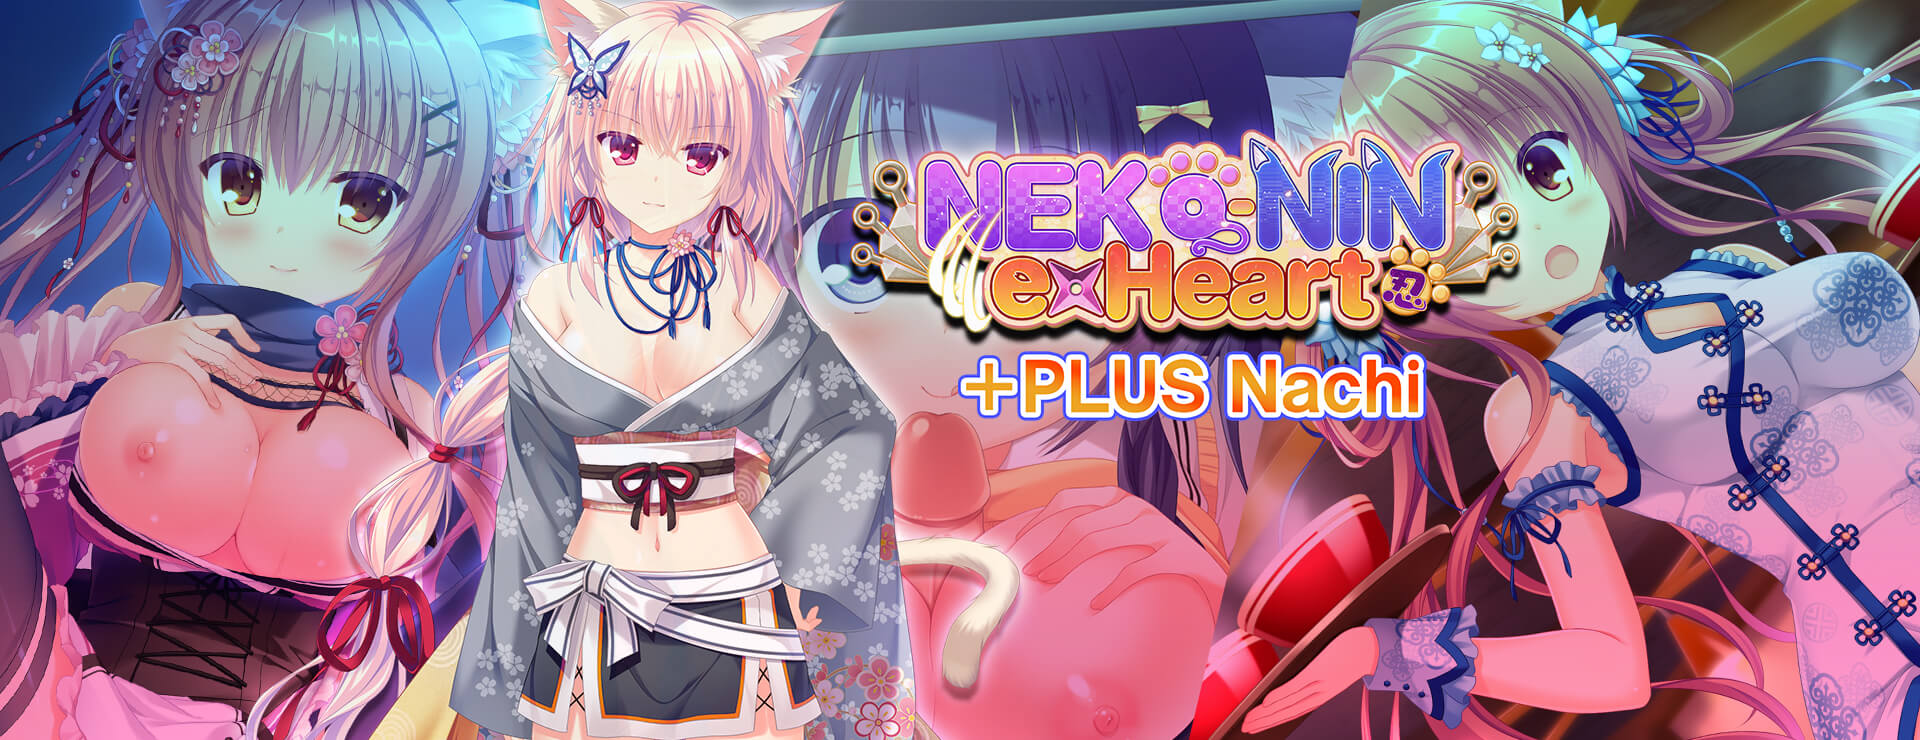 NEKO-NIN exHeart +PLUS Nachi (DLC Part 1) - Novela Visual Juego